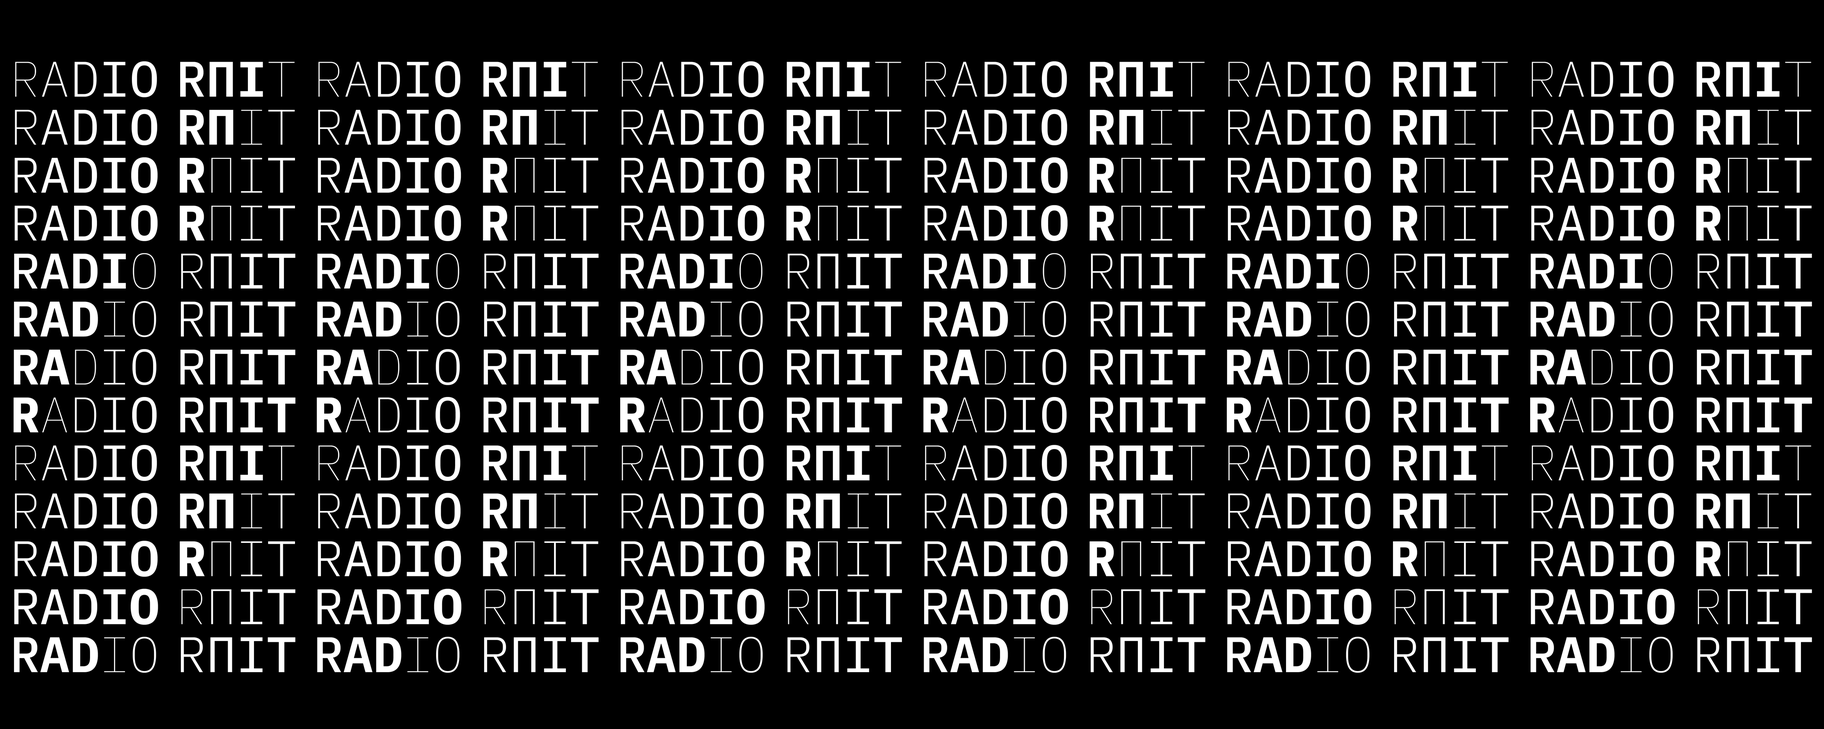 typografische herhaling van de woorden 'Radio Ruit'